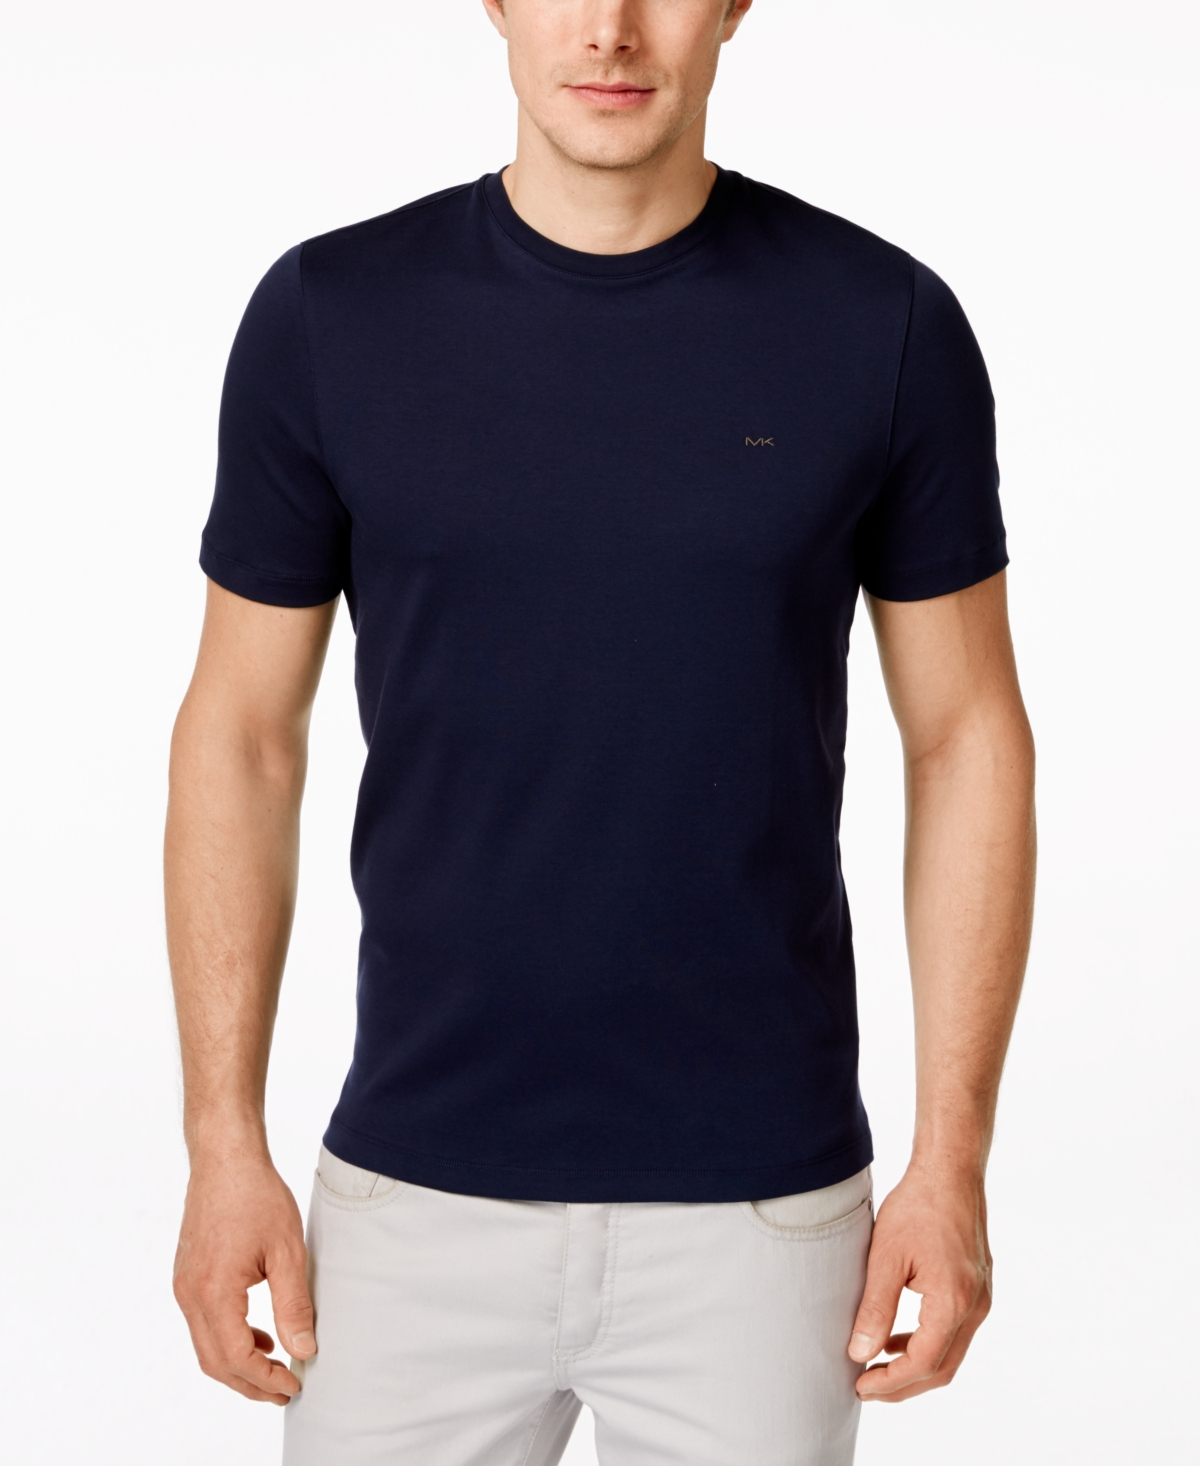 Michael Kors Men's Basic Crew Neck T-shirt In Midnight